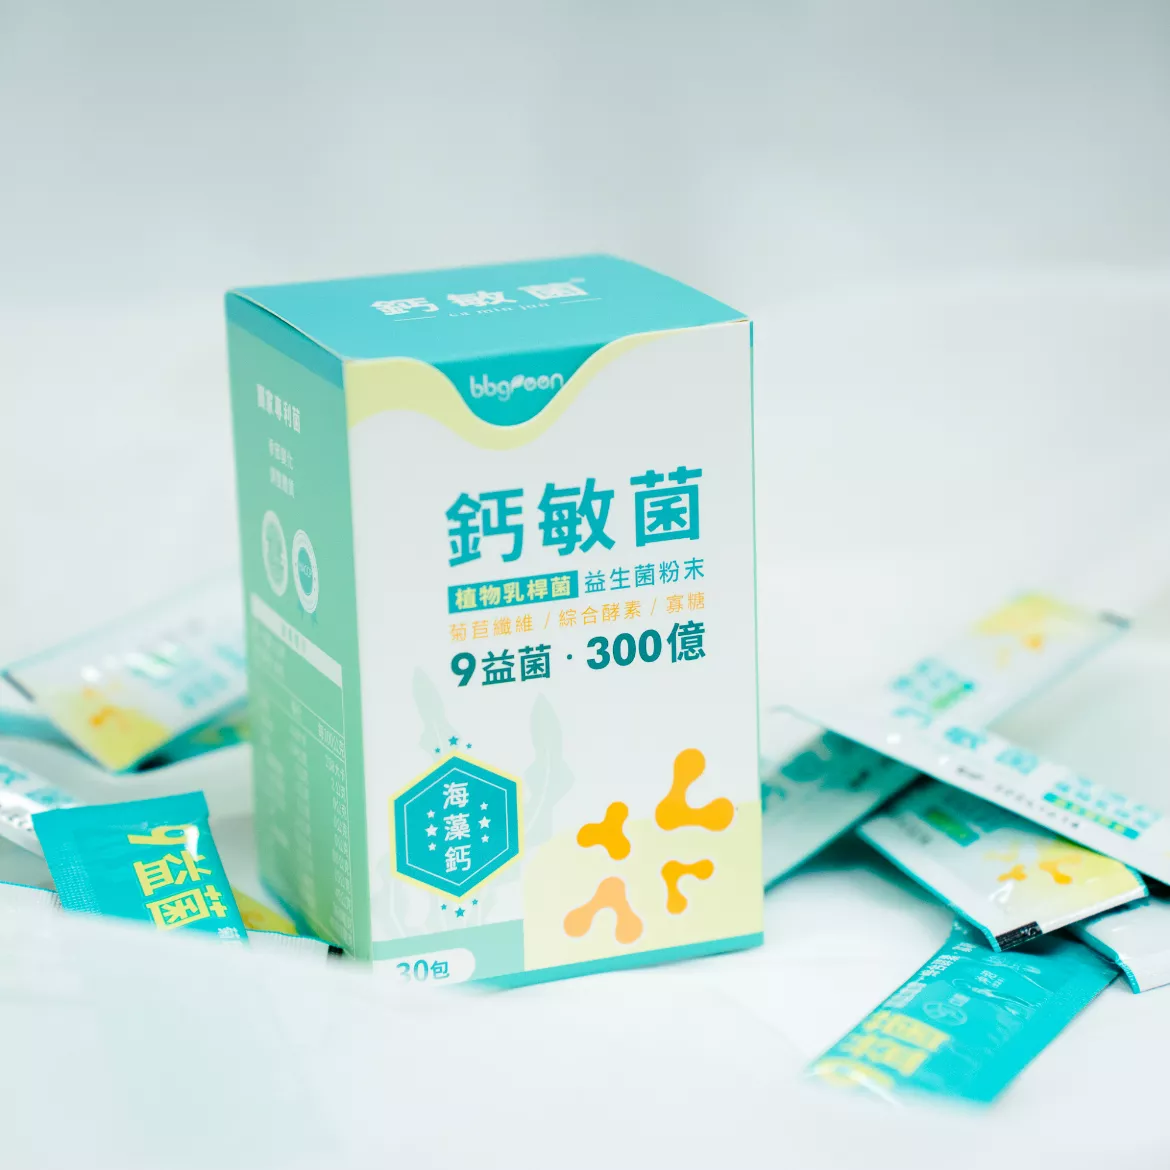 鈣敏菌-益生菌粉末 30包/盒